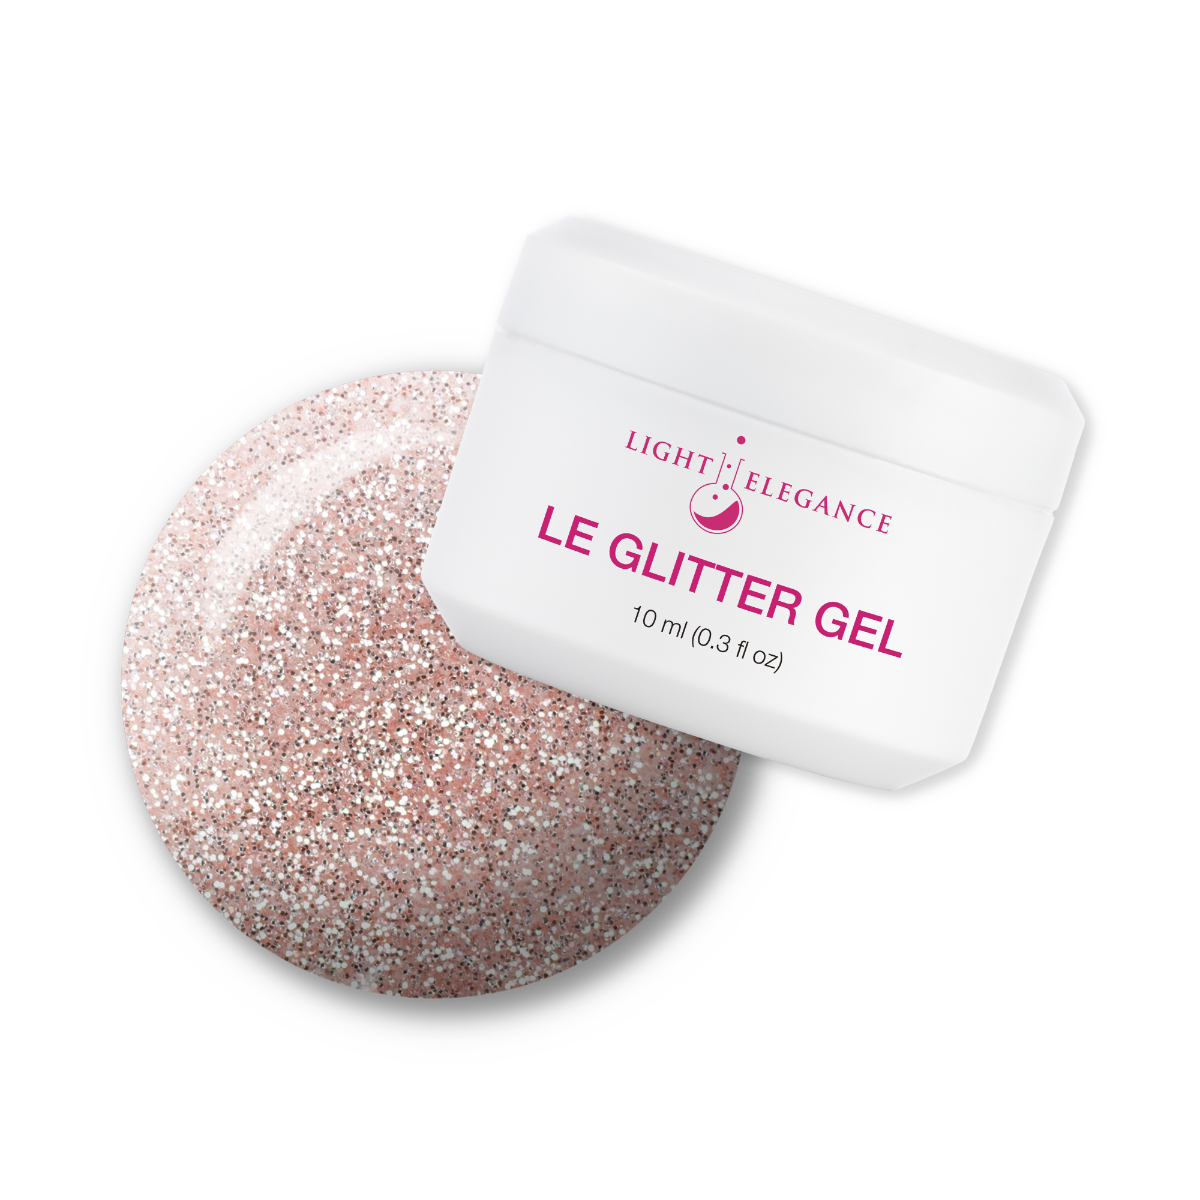 Light Elegance Glitter Gel - Nudie :: New Packaging